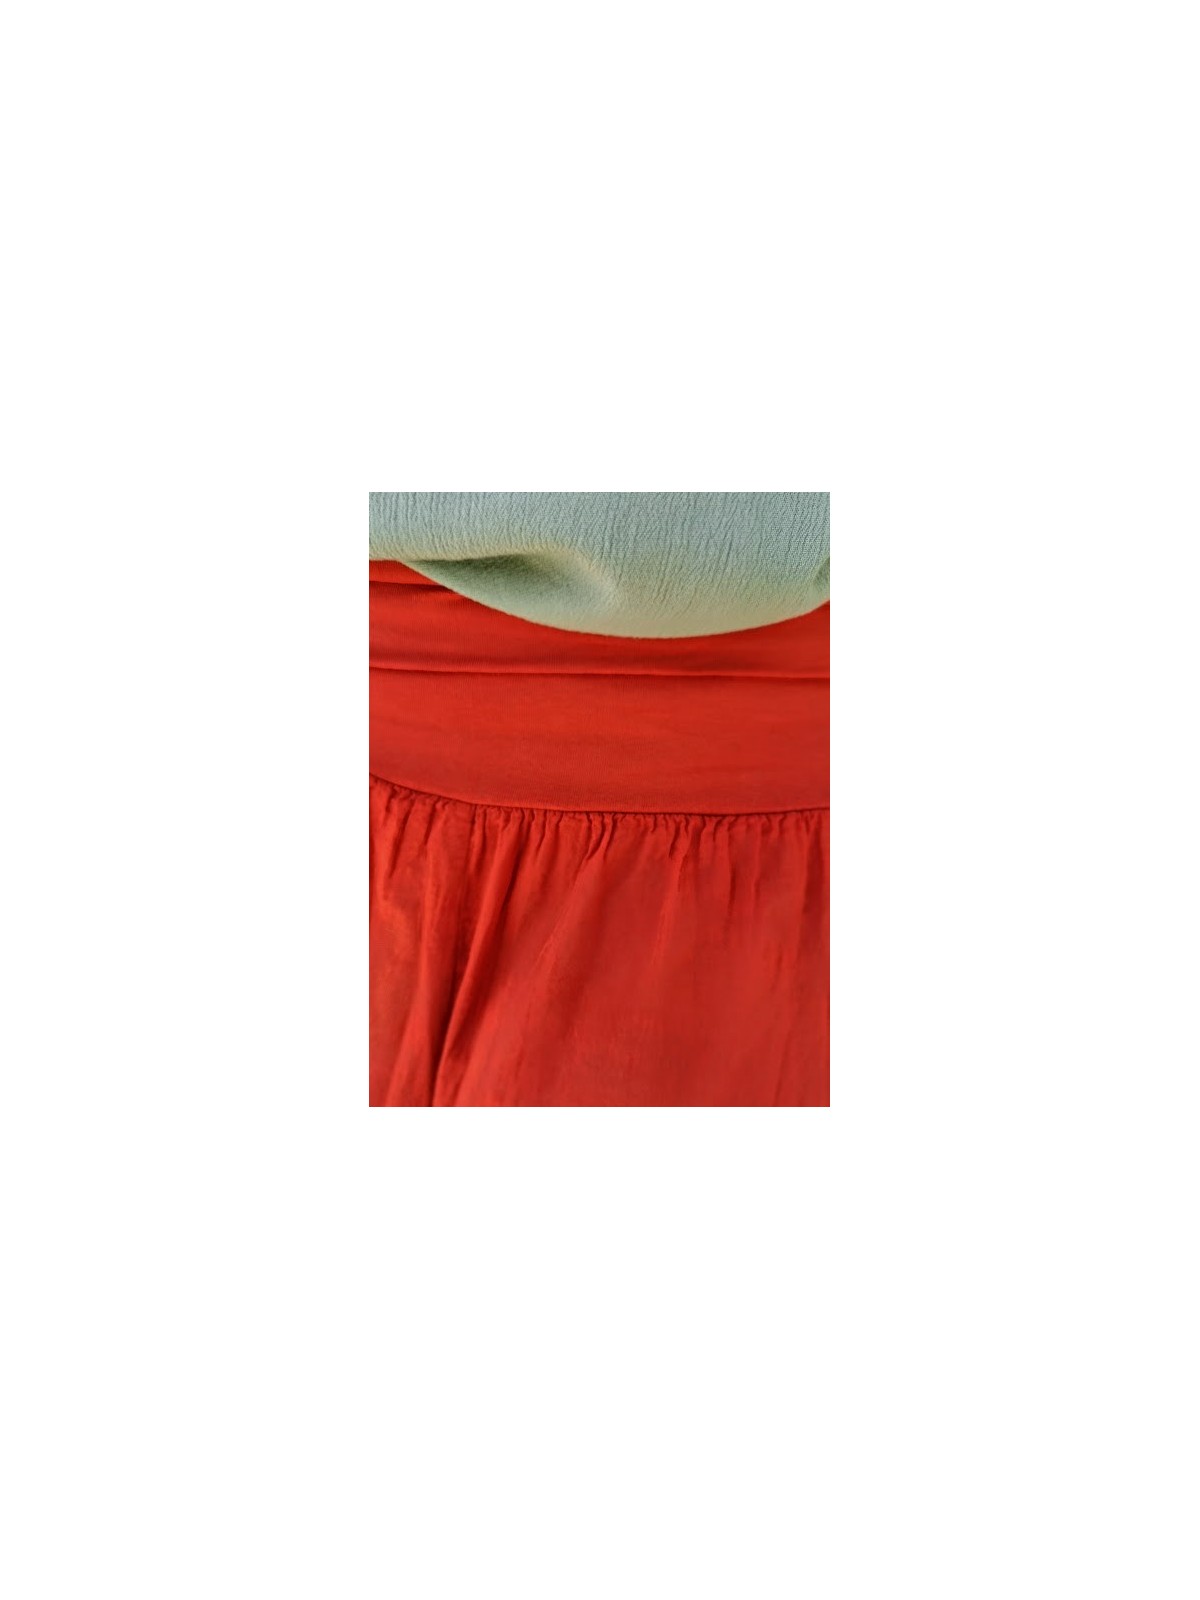 Jupe longue plissée terracotta | 3 vue rapprochée détails plissés | Tilleumenthe boutique de mode femme en ligne